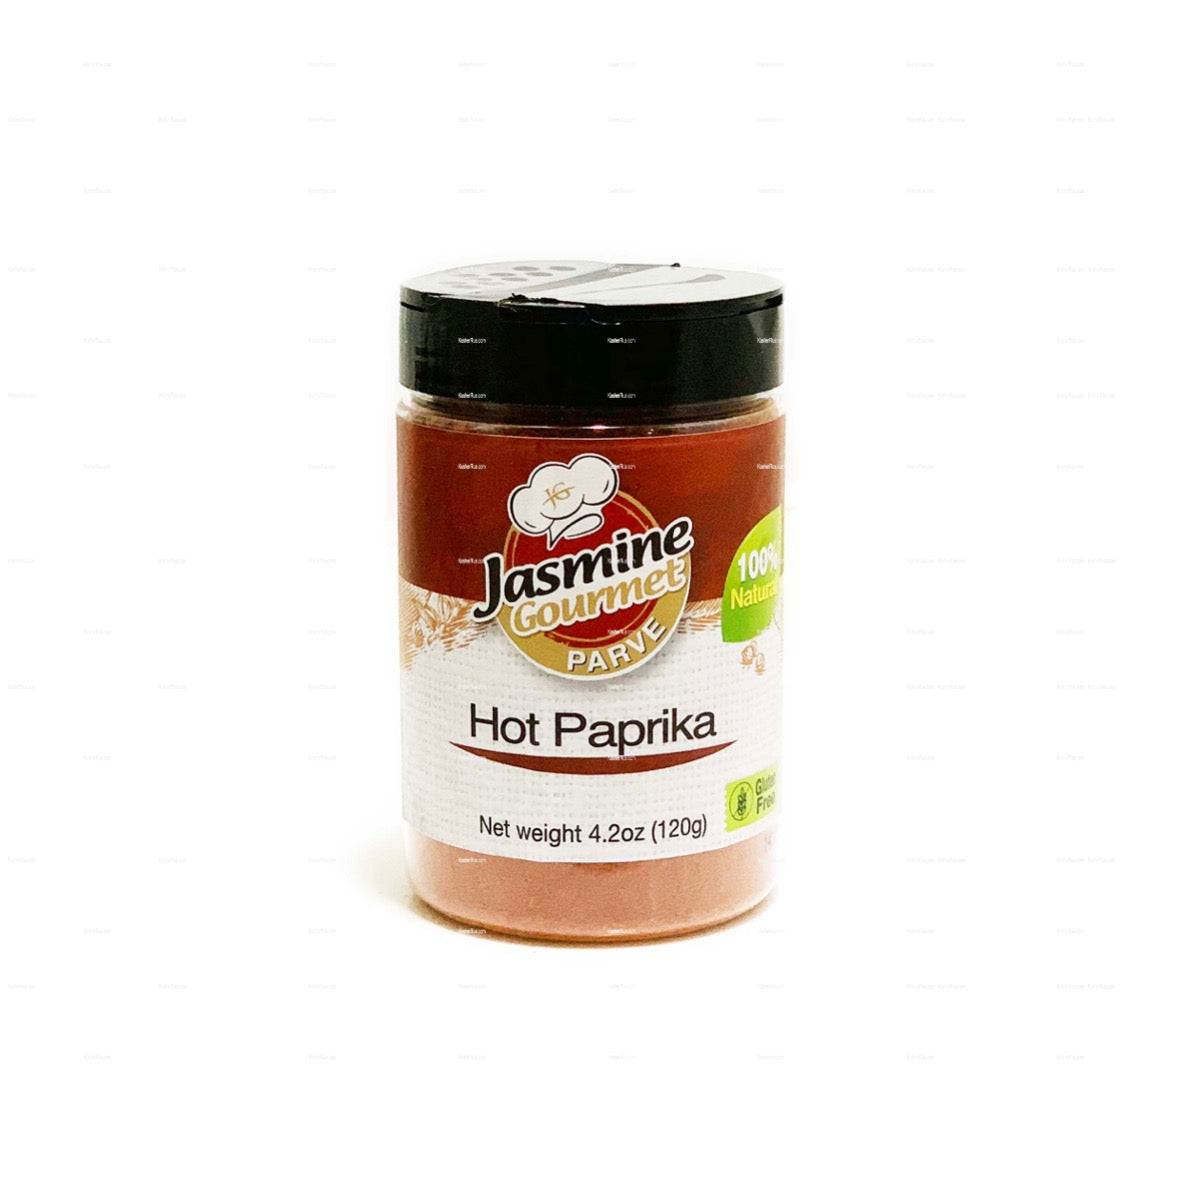 Jasmine Gourmet Hot Paprika 4.2oz